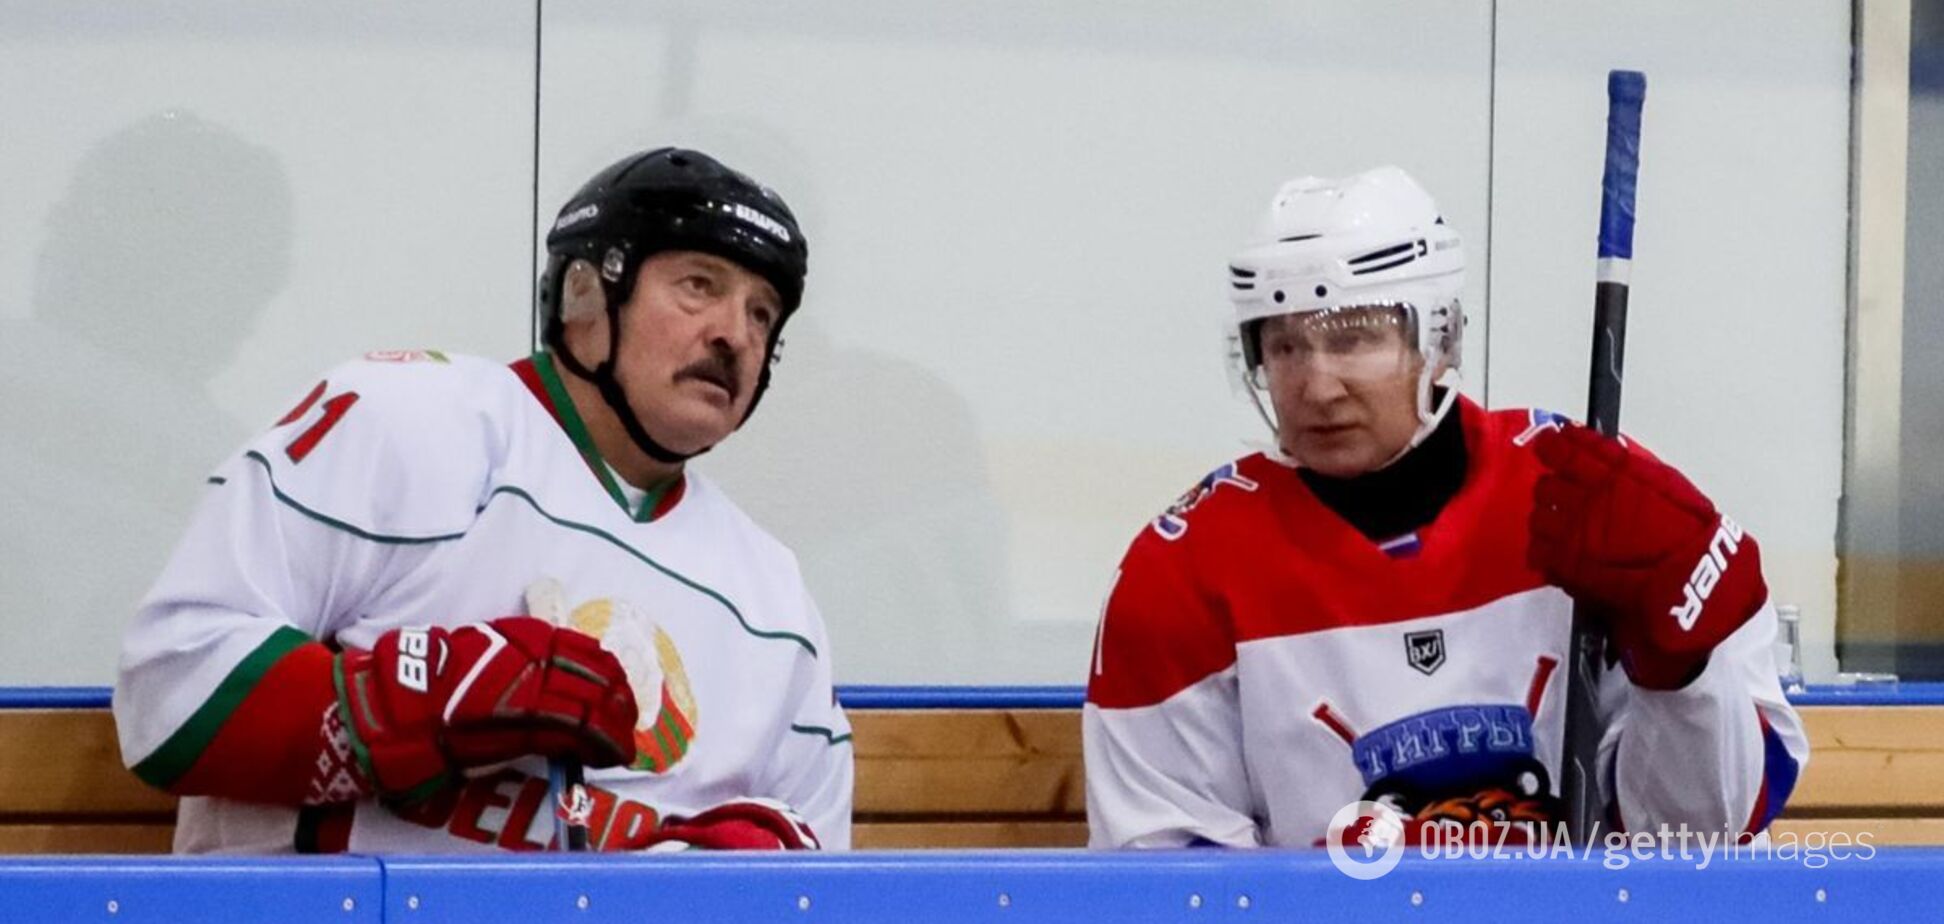 Хоккейный матч с участием Путина и Лукашенко высмеяли в сети